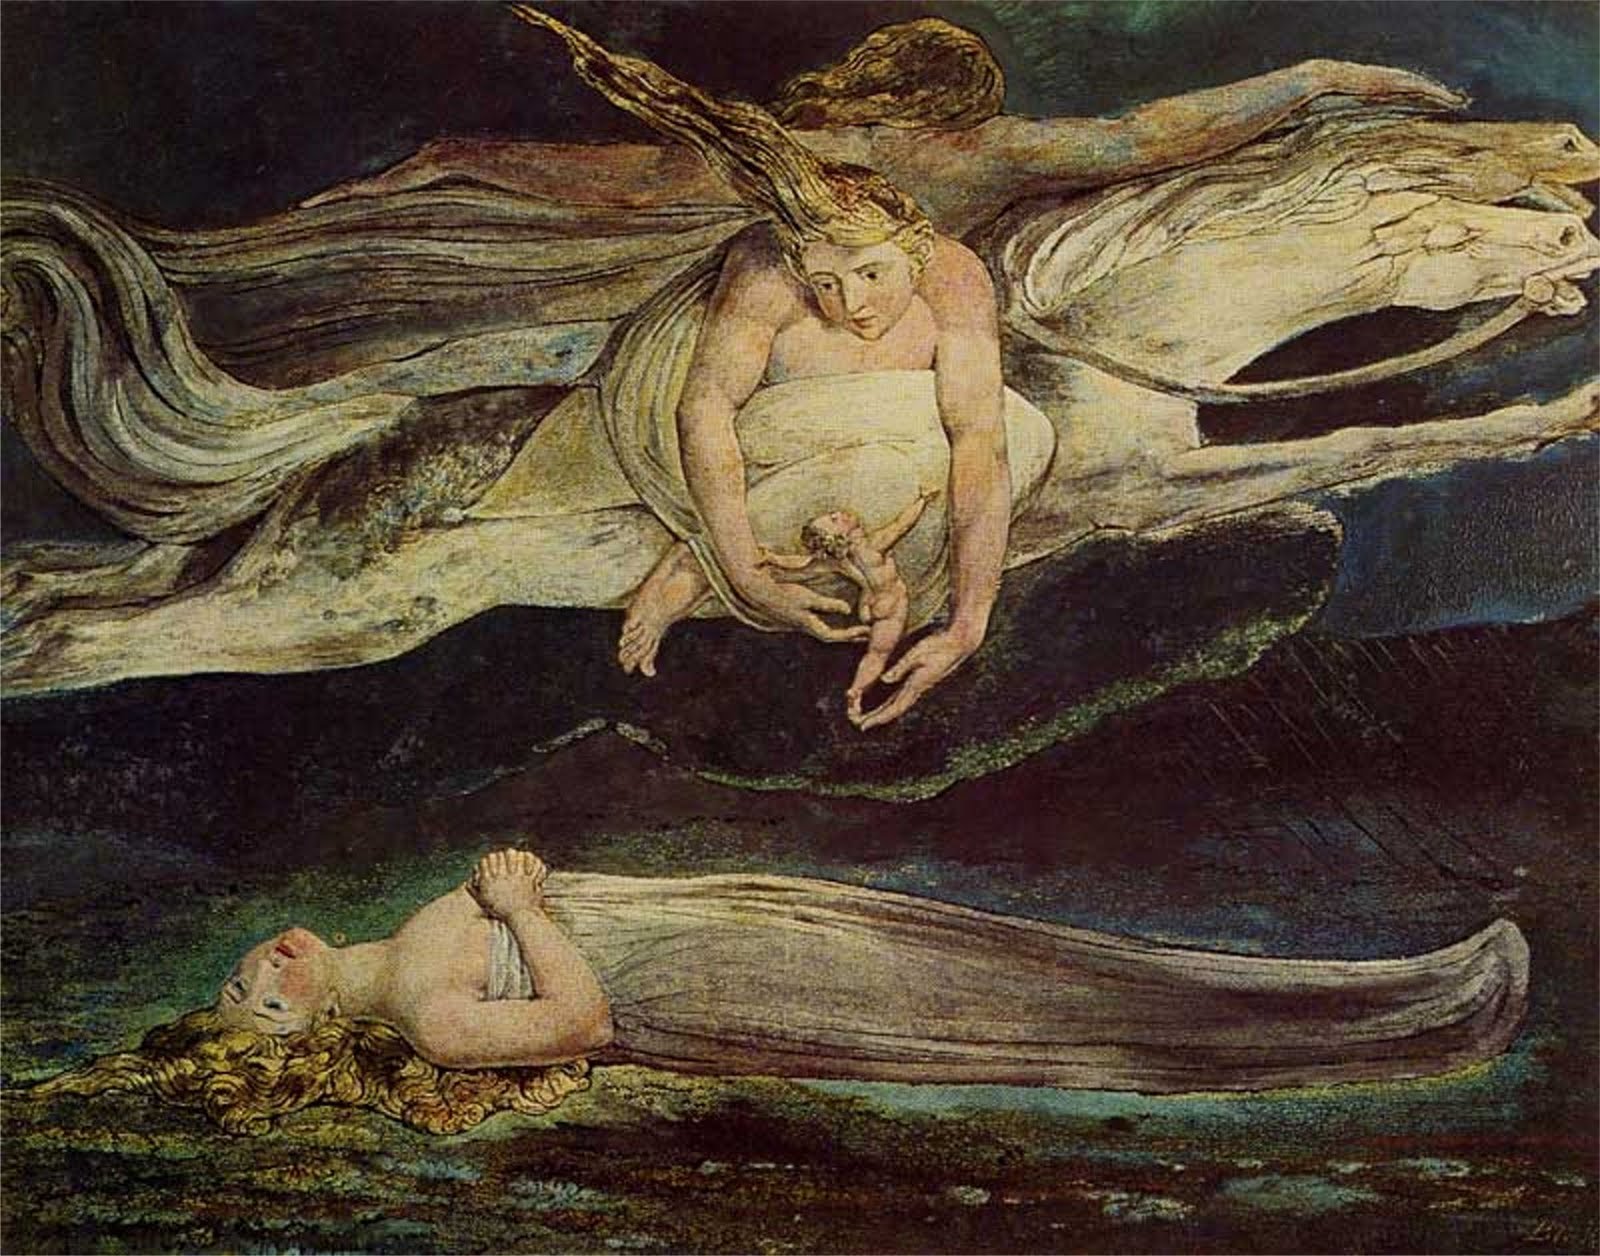 Pietà by William Blake - 1795 - - Tate Modern